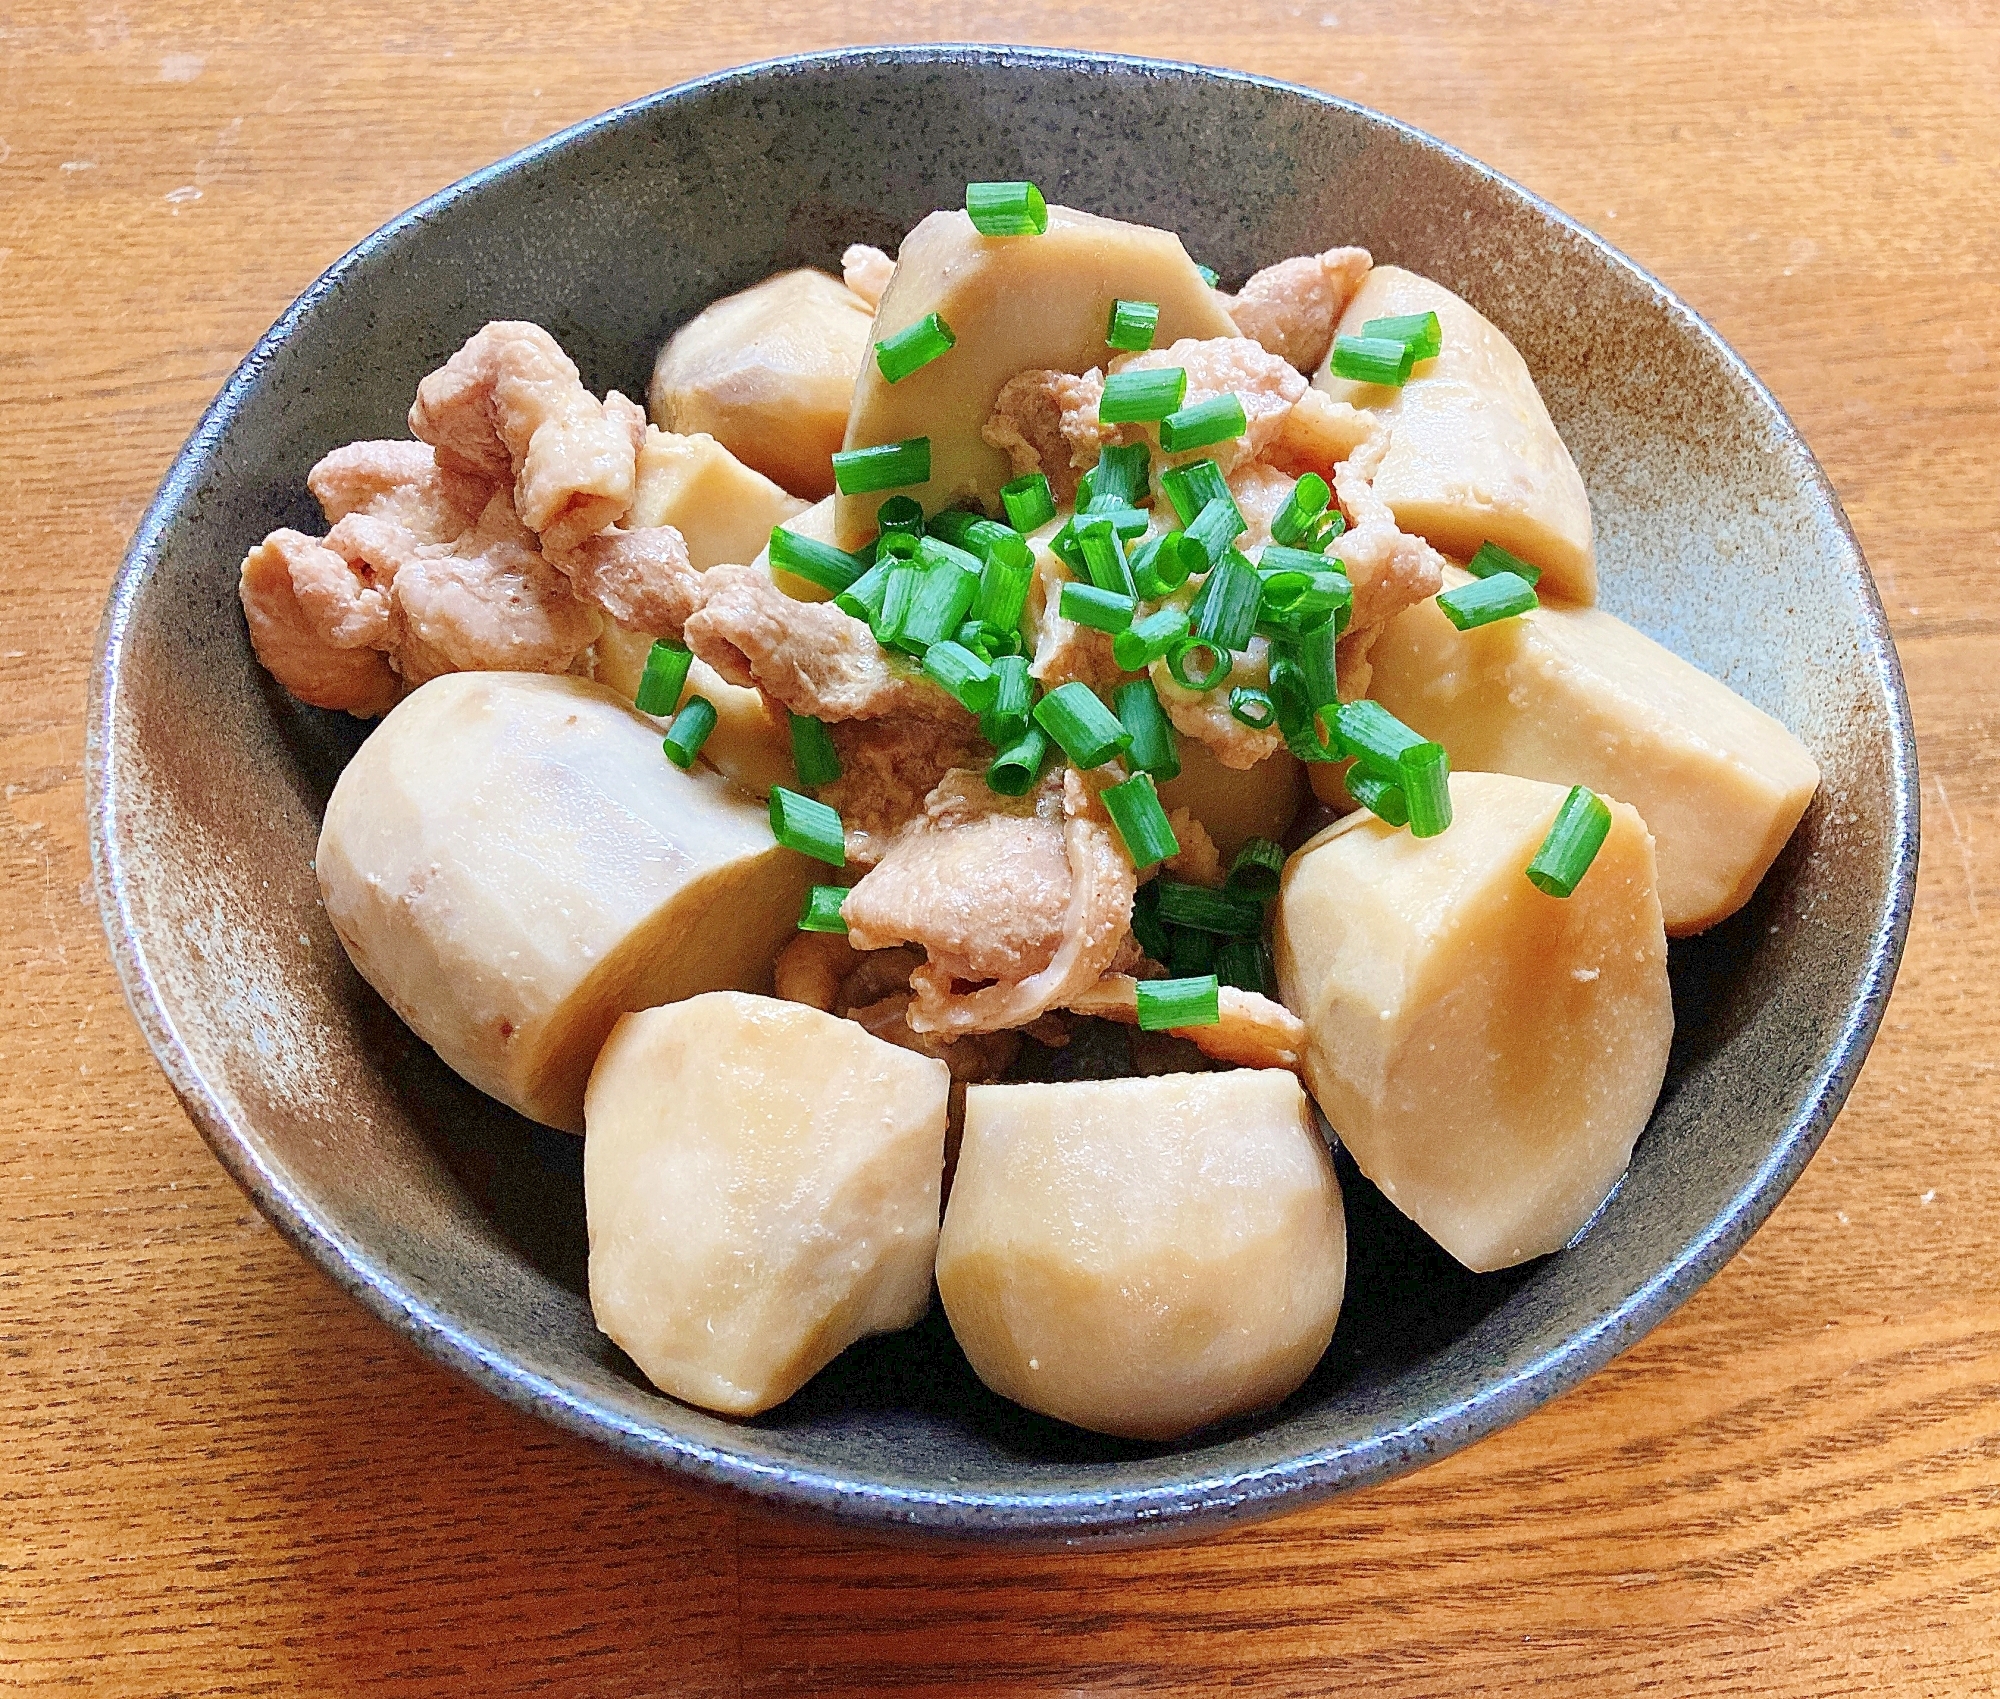 里芋と豚肉の味噌煮